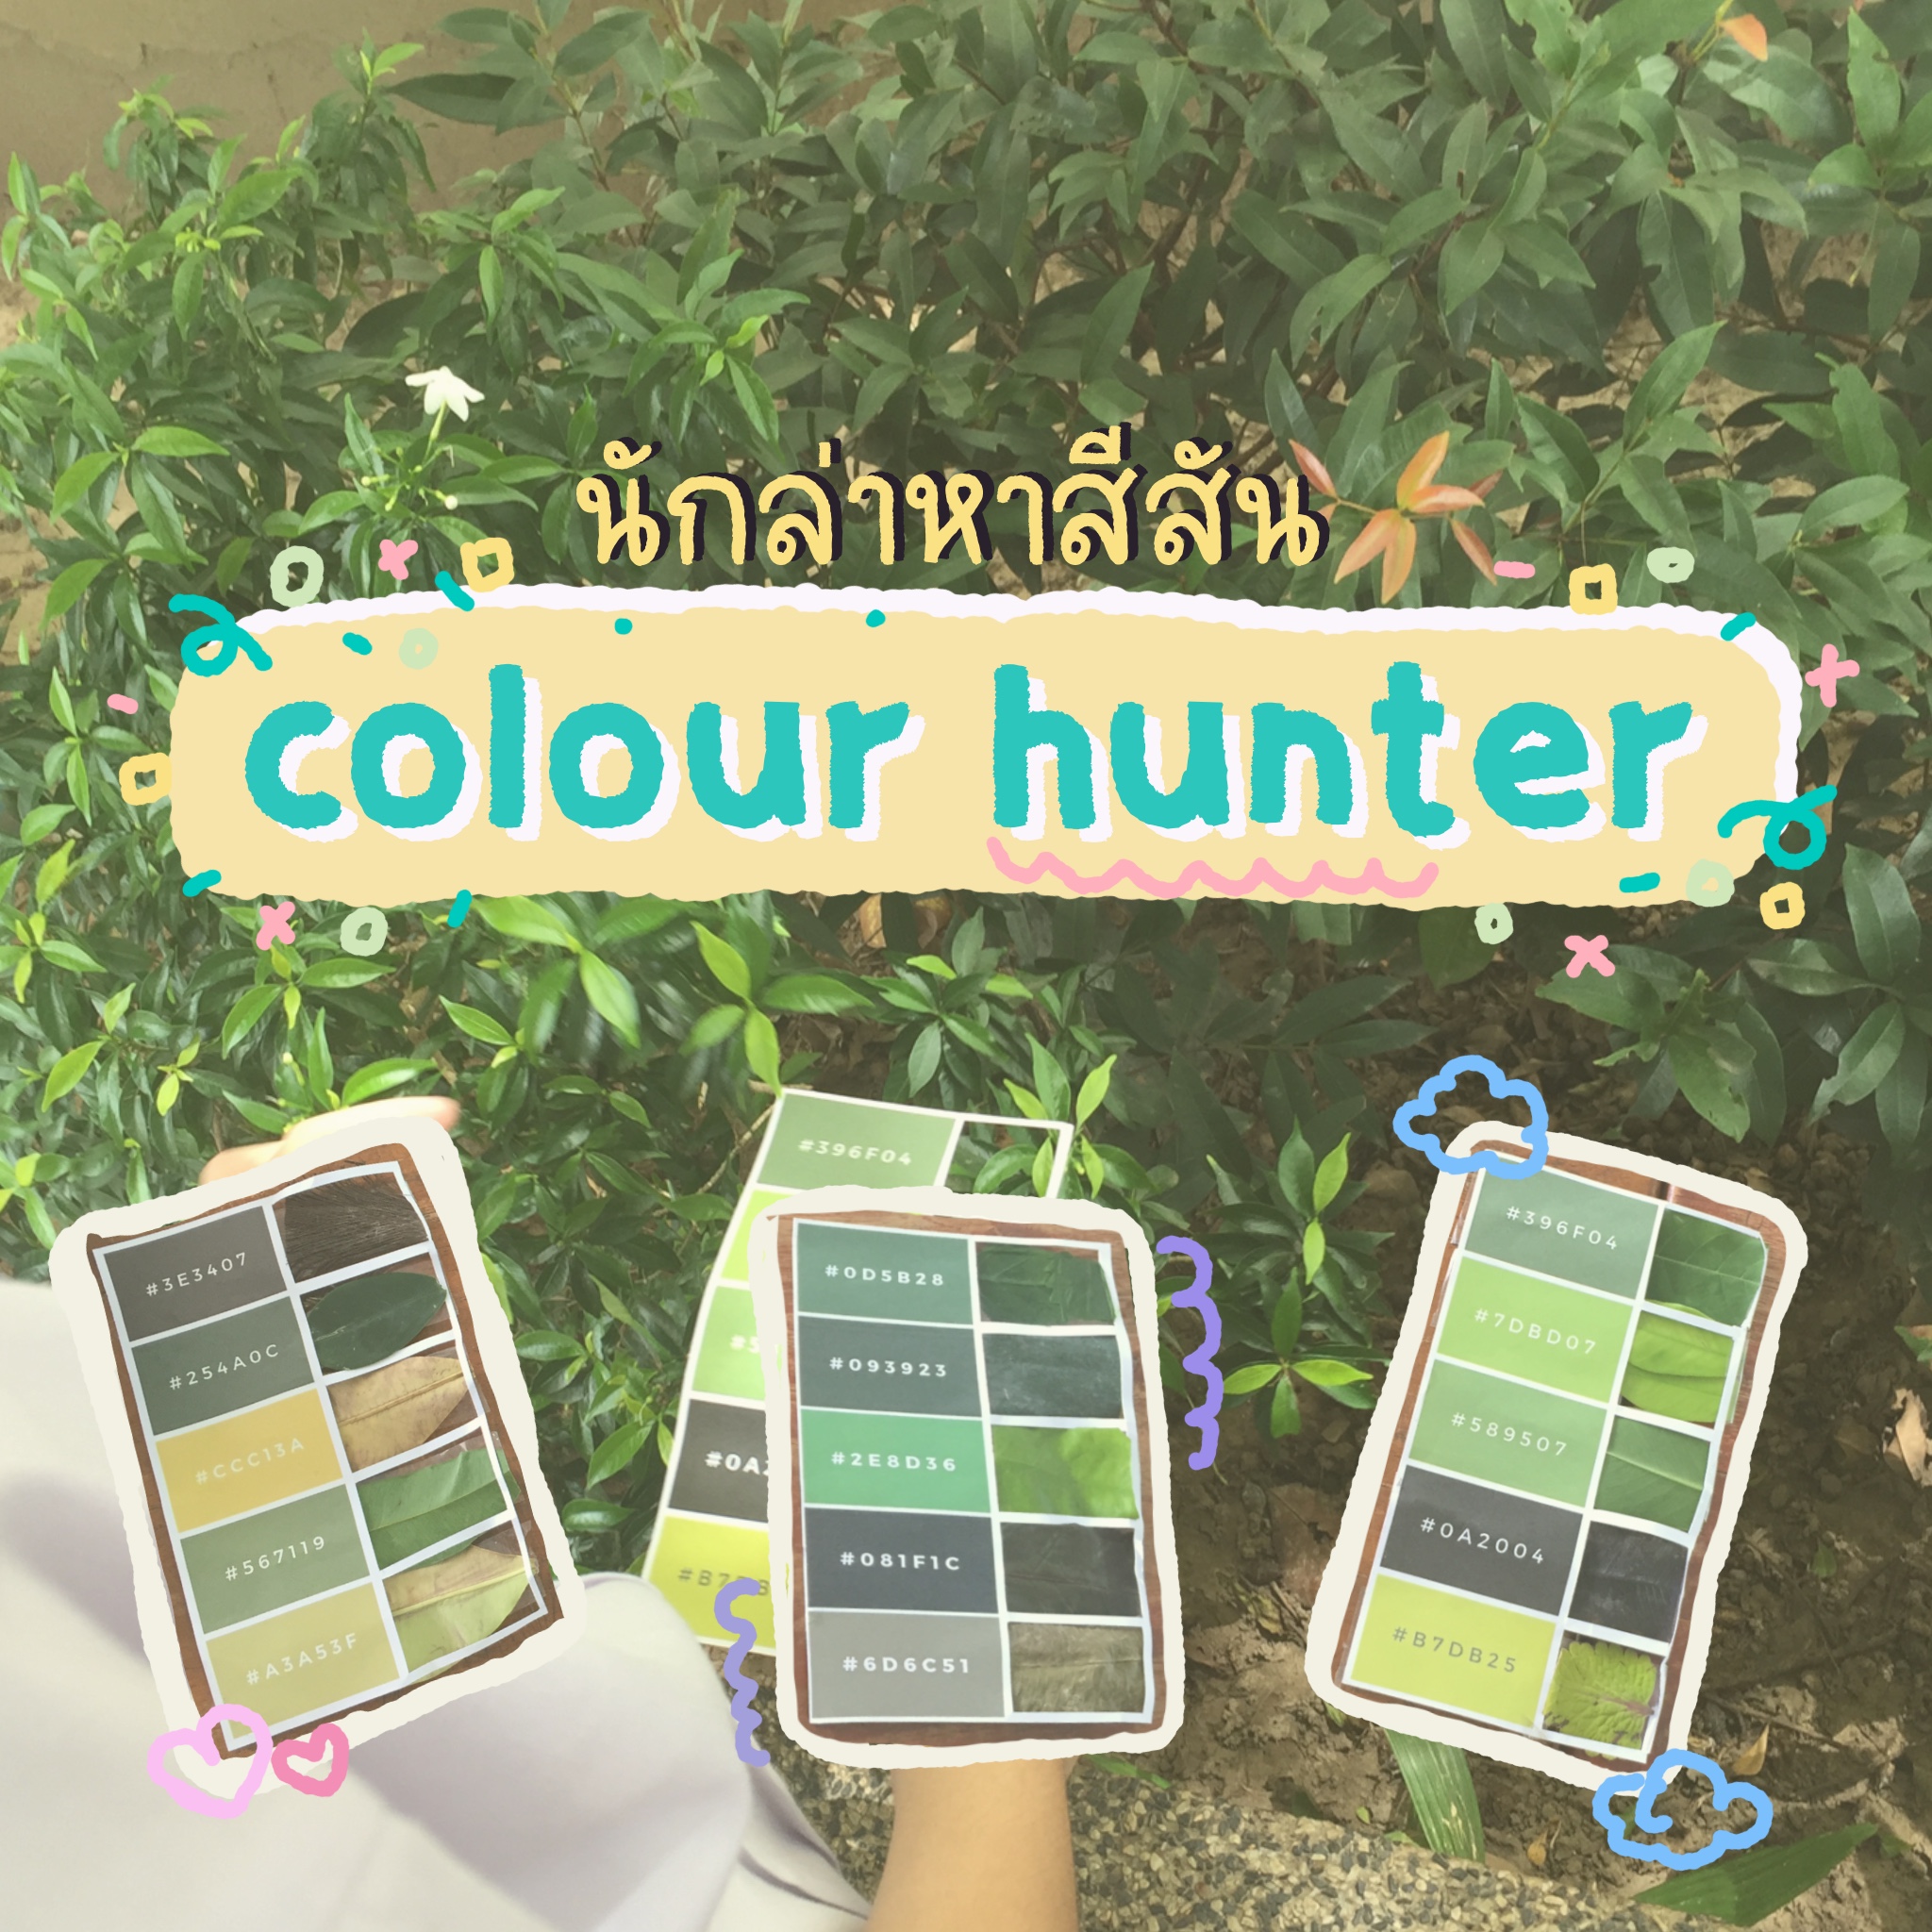 ภาพประกอบไอเดีย นักล่าแห่งสีสัน (colour hunter)